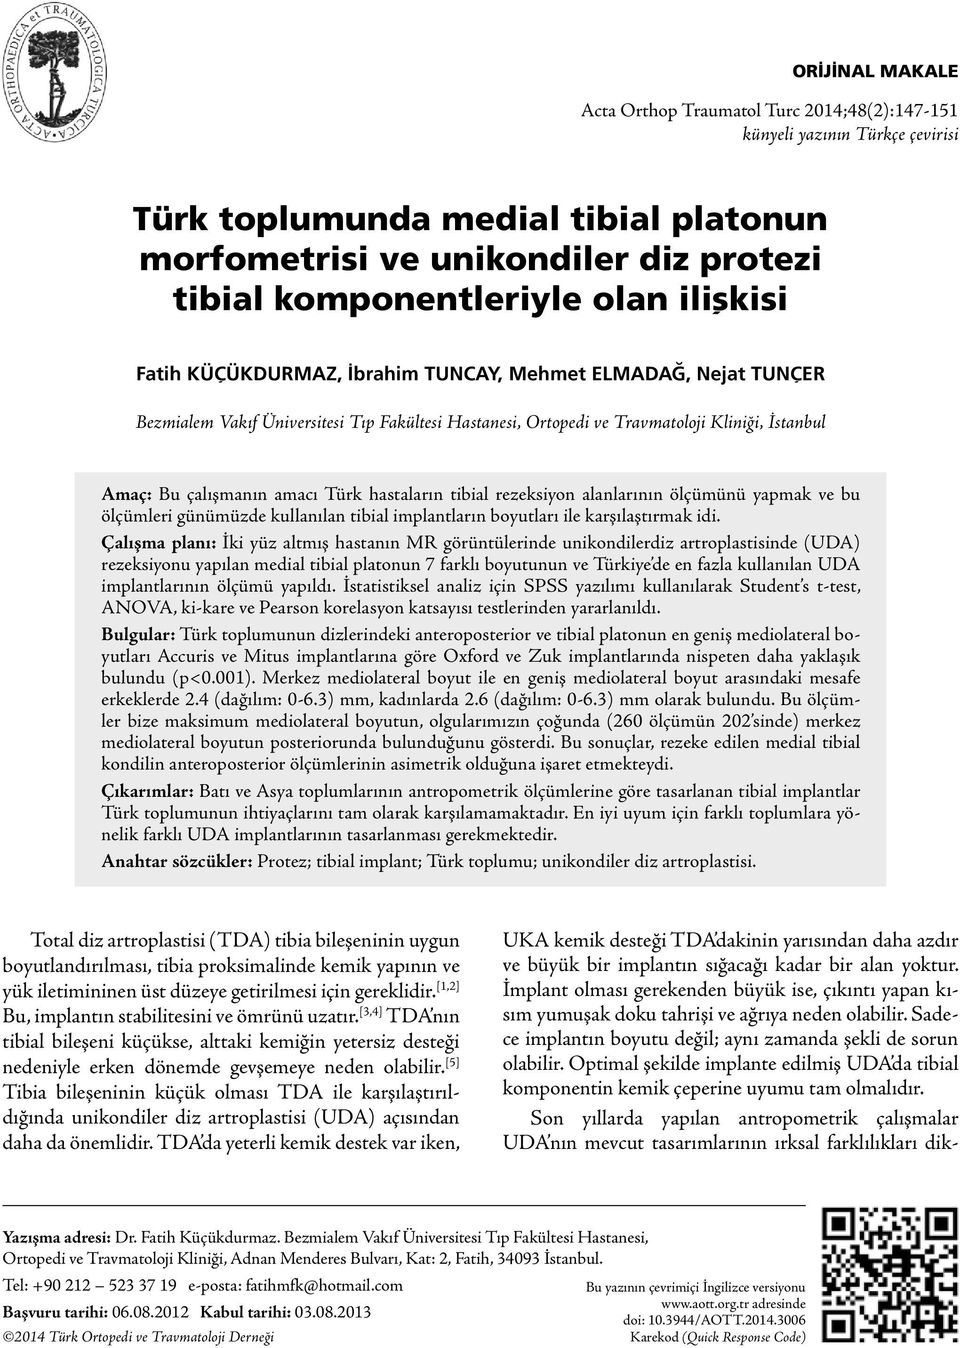 amacı Türk hastaların tibial rezeksiyon alanlarının ölçümünü yapmak ve bu ölçümleri günümüzde kullanılan tibial implantların boyutları ile karşılaştırmak idi.